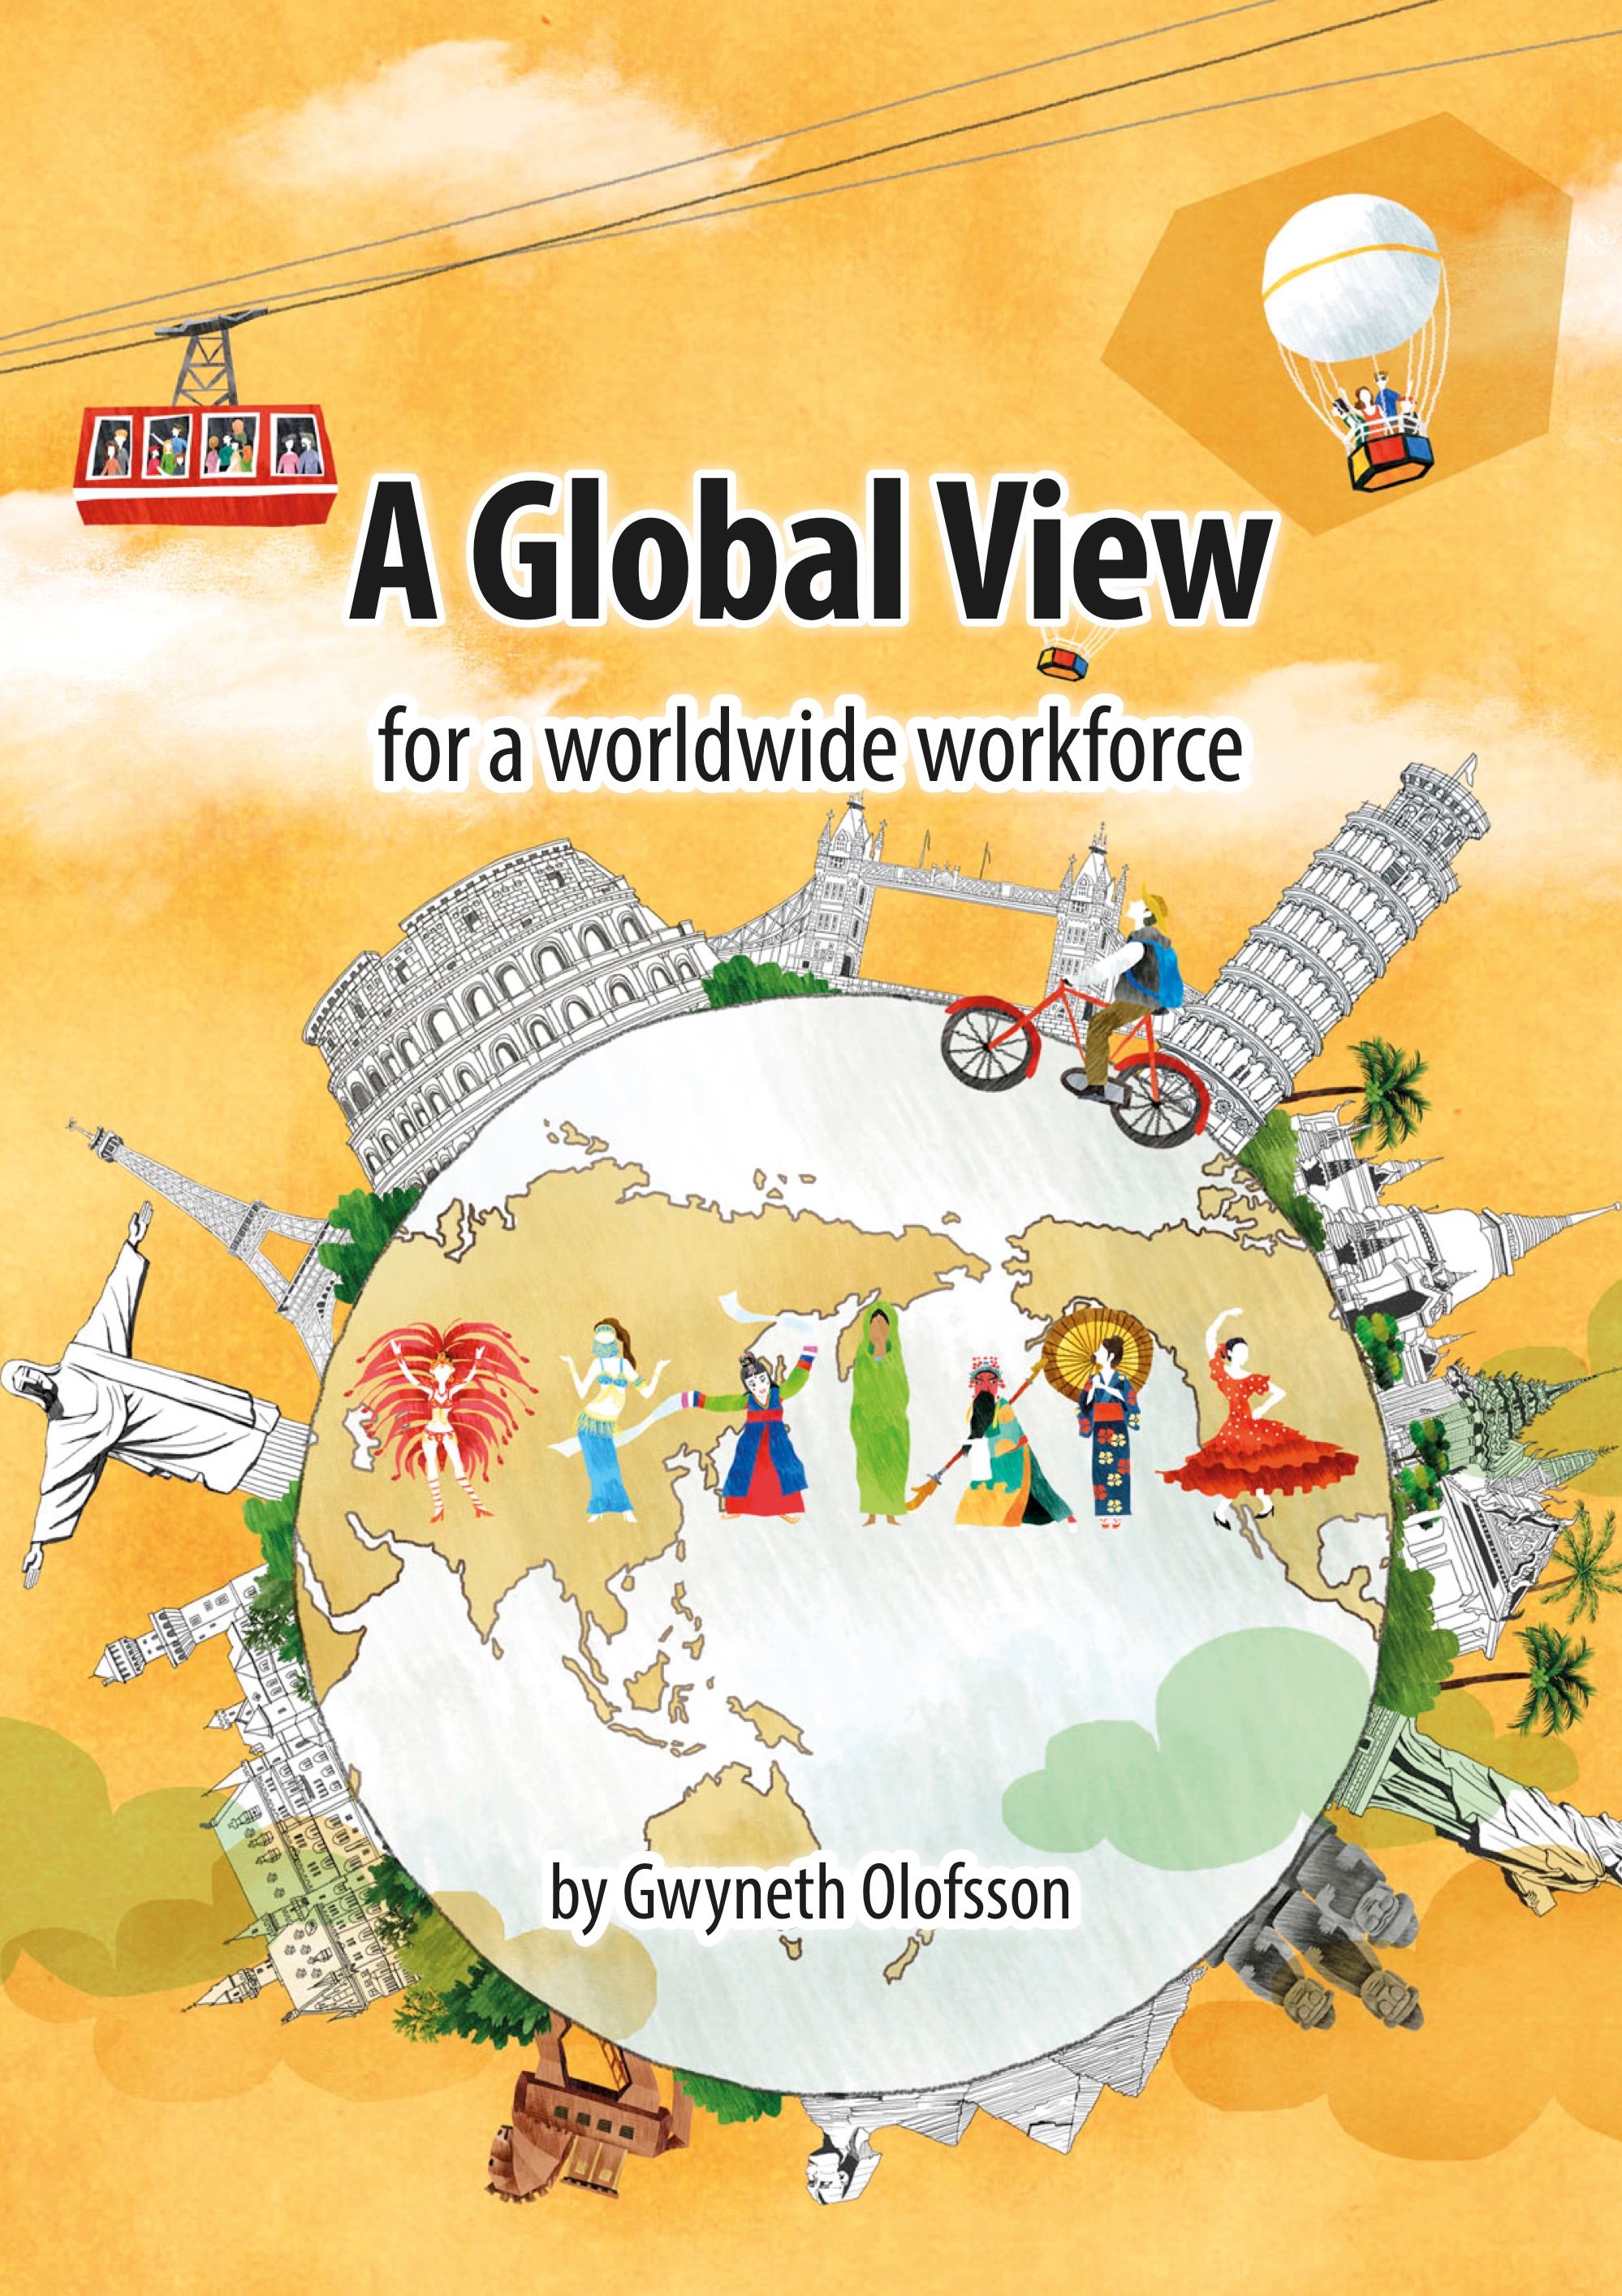 A Global View for a worldwide workforce, eBook by Gwyneth Olofsson